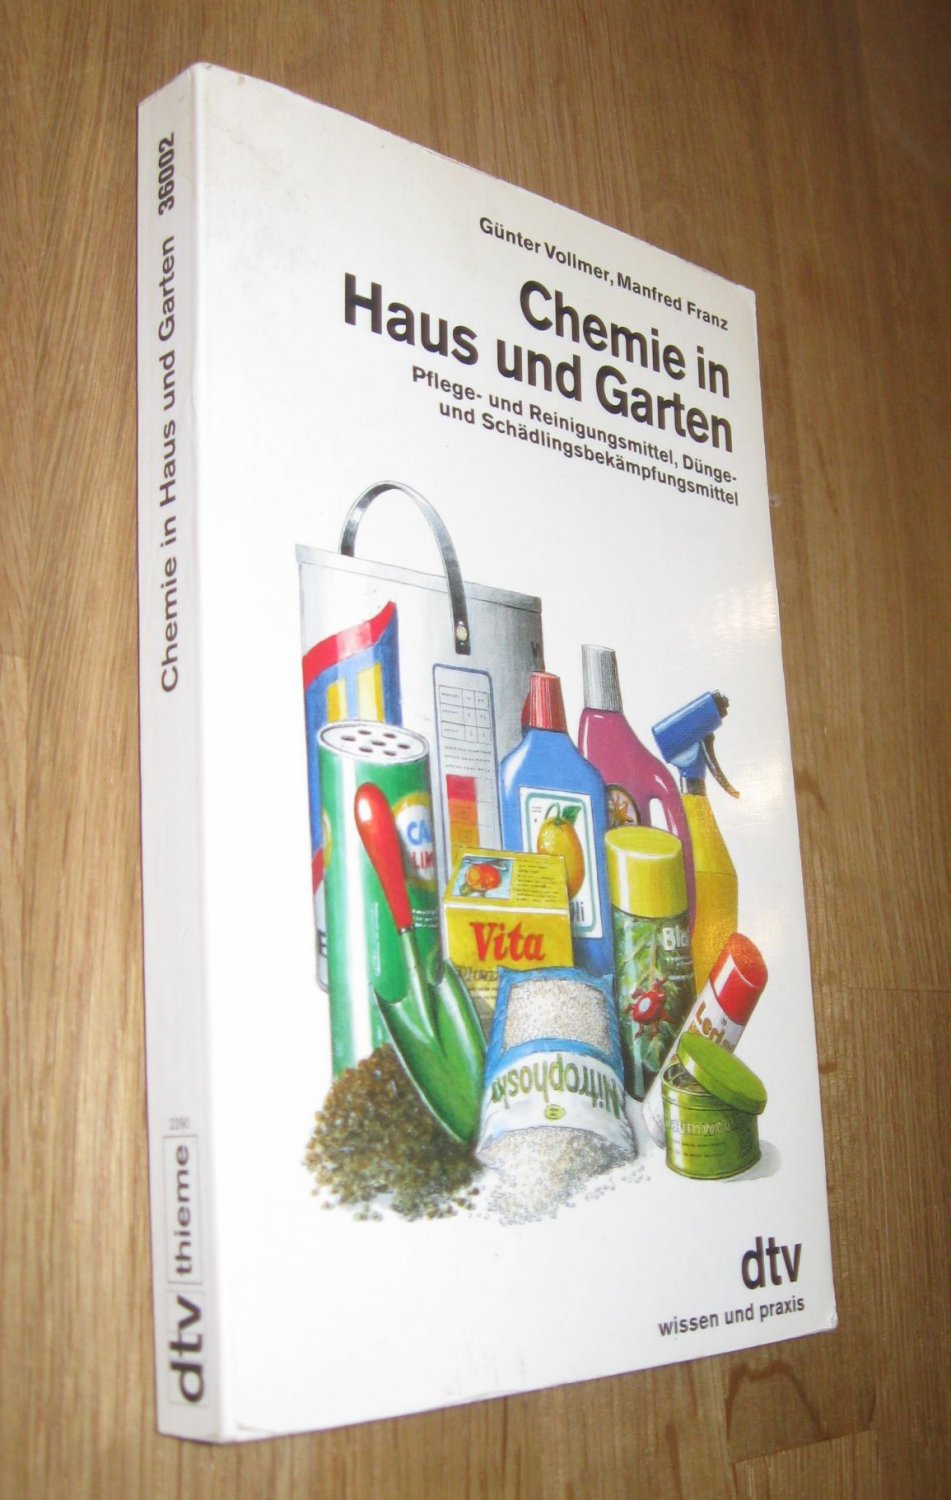 Chemie in Haus und Garten - Hrsg. von Vollmer, Günter / Franz, Manfred